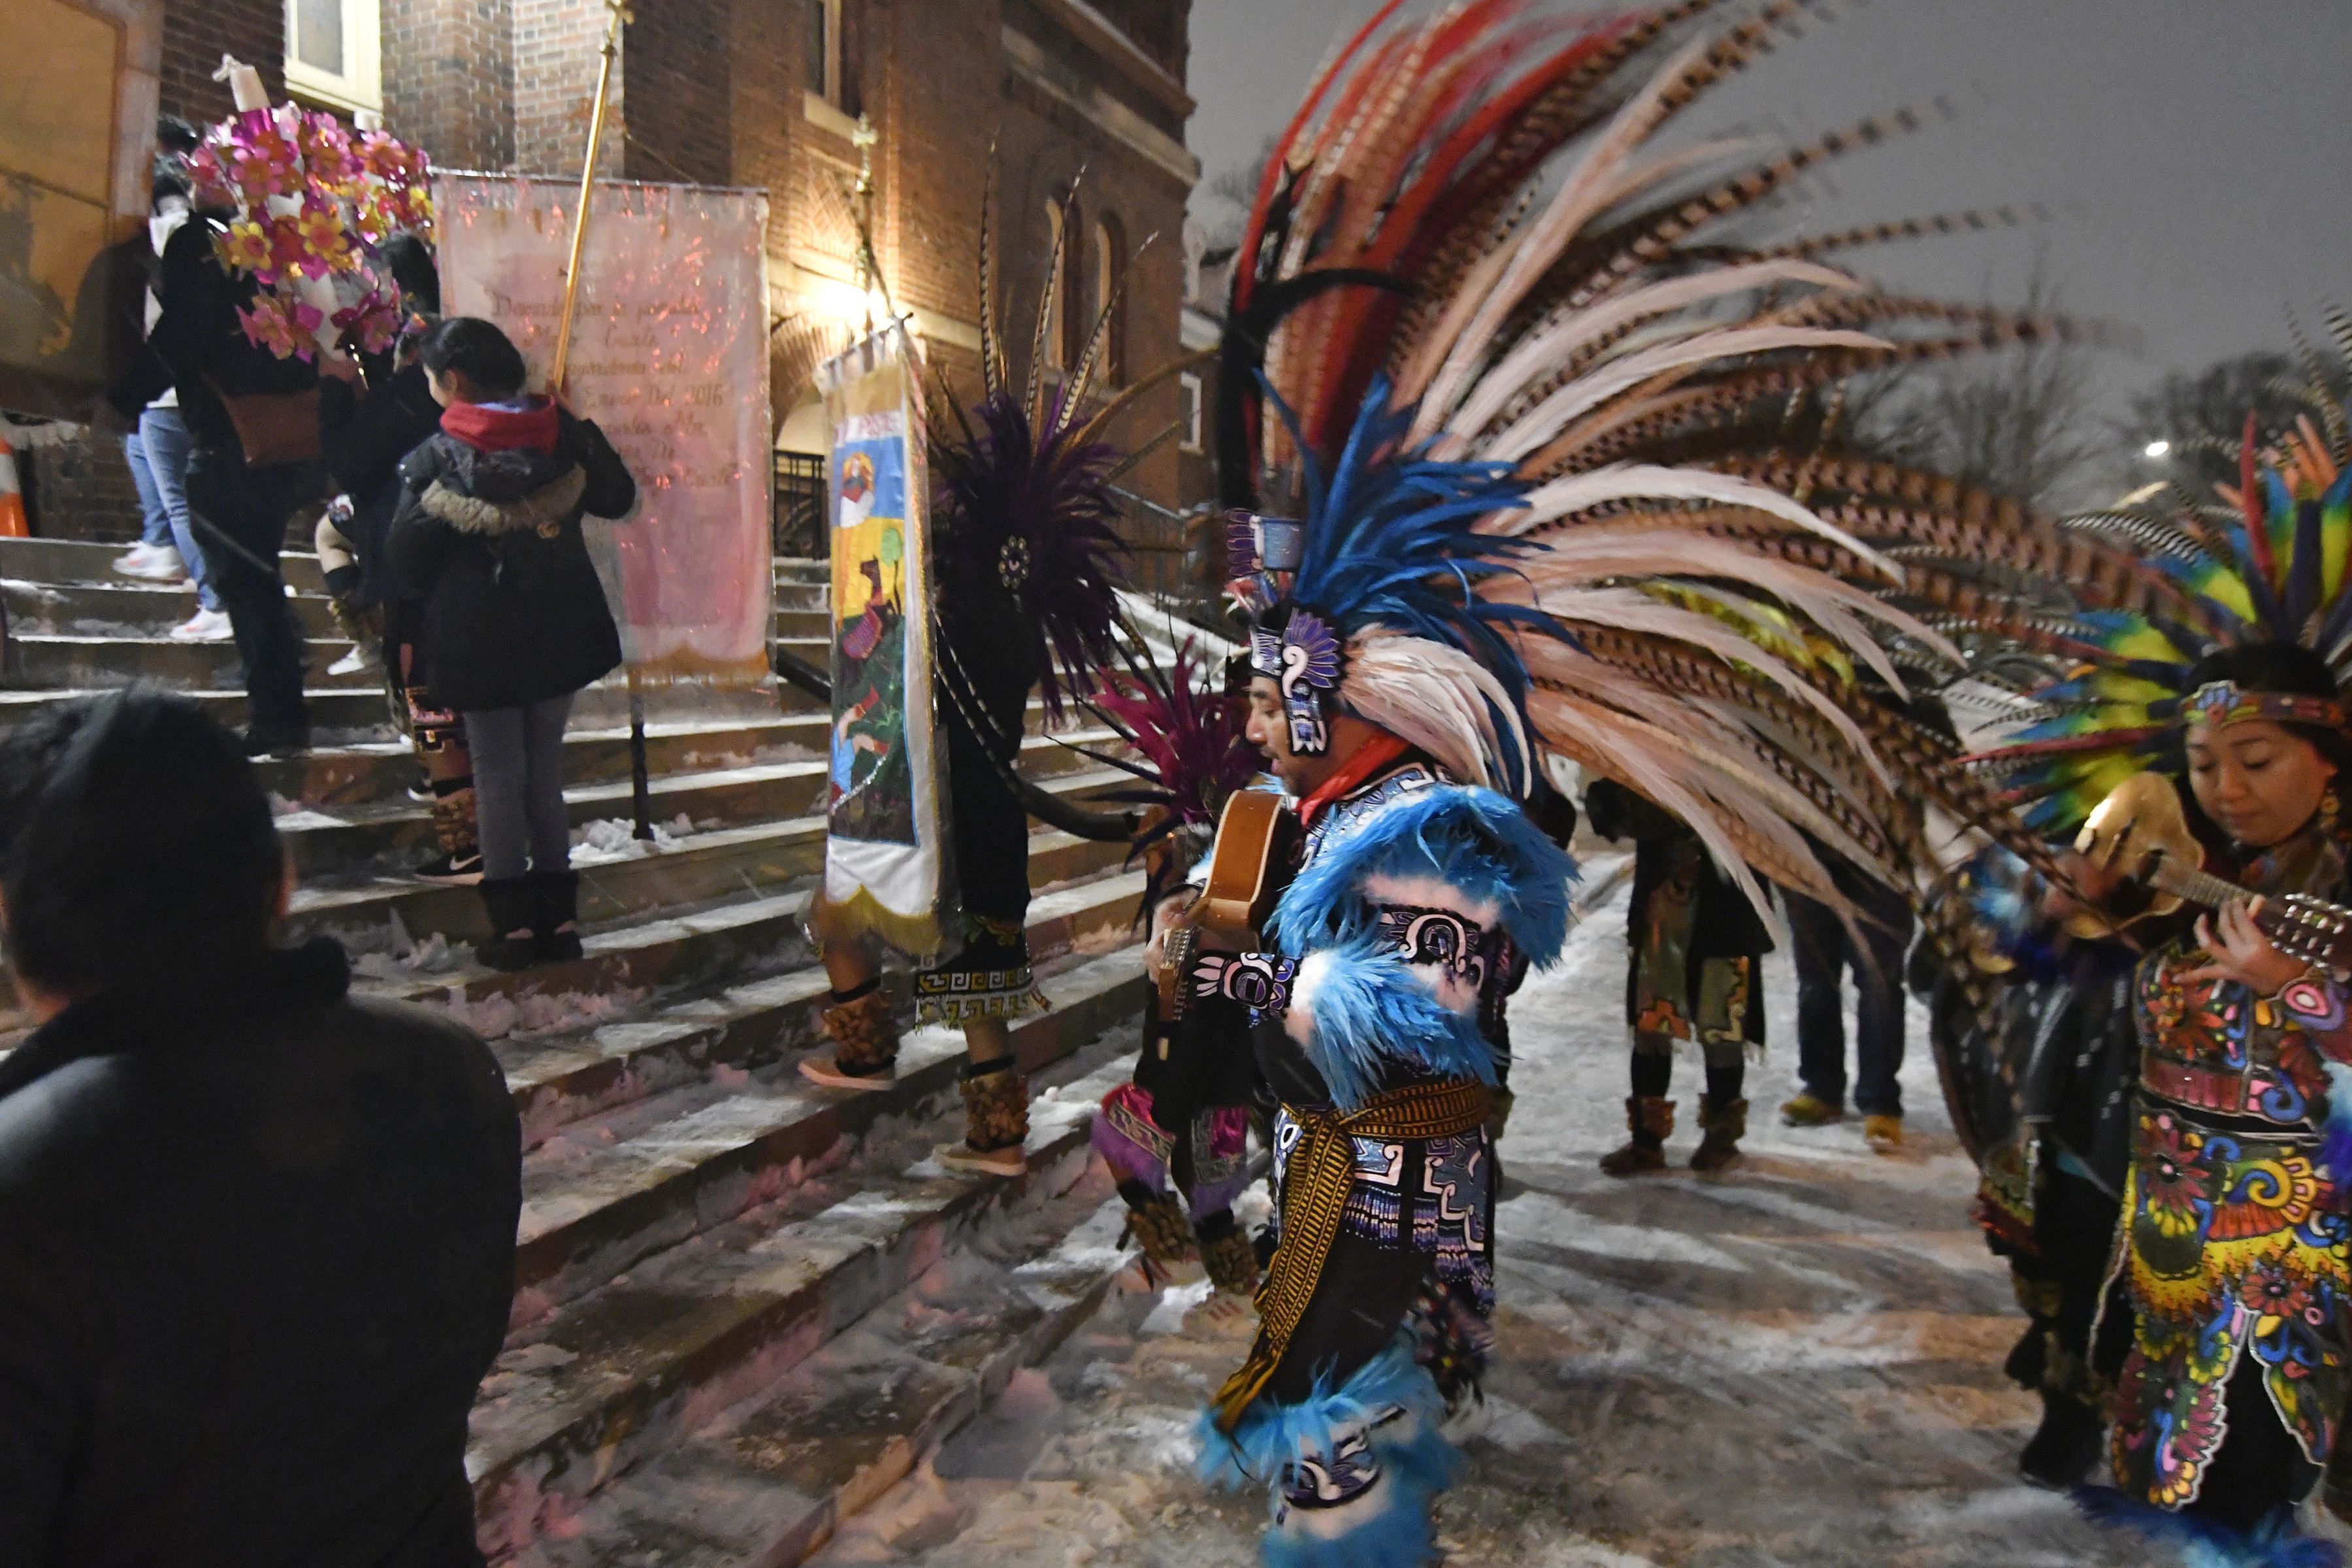 Personas con indumentarias aztecas tradicionales suben la escalinata de la Iglesia del Sagrado Corazón de Jesús en Minneapolis el 24 de enero del 2020, durante dos días de festejos en homanaje a San Pablo, santo patrono de Axochiapán, la localidad del sur de México de donde provienen muchos de los mexicanos que residen en Minneapolis. (AP Photo/Jim Mone)